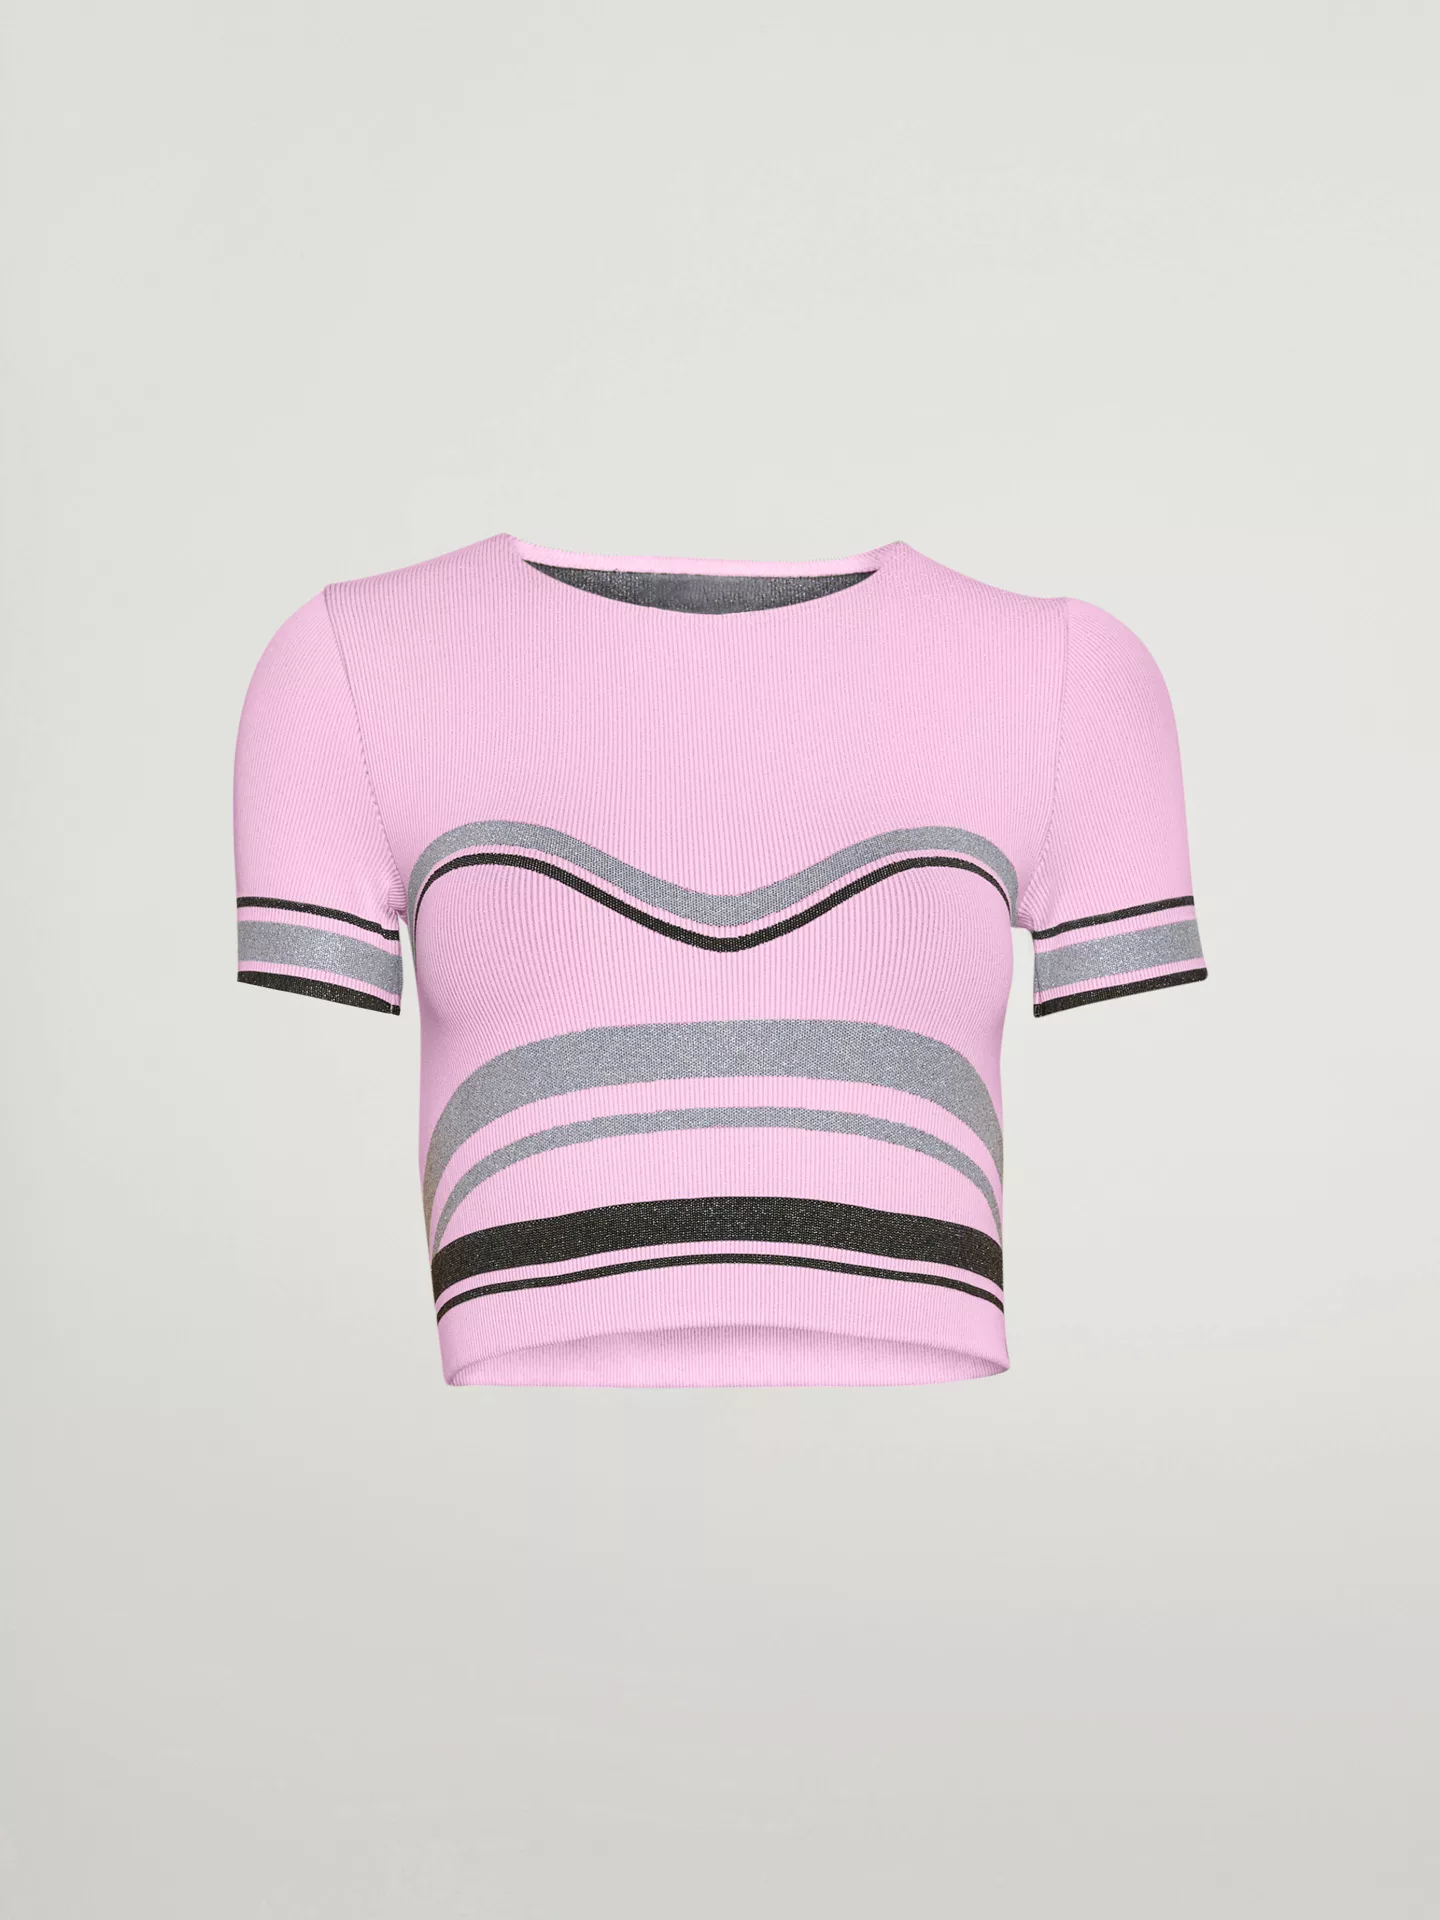 Wolford - Shaping Stripes Crop Top, Frau, prisma pink/silver/black, Größe: günstig online kaufen